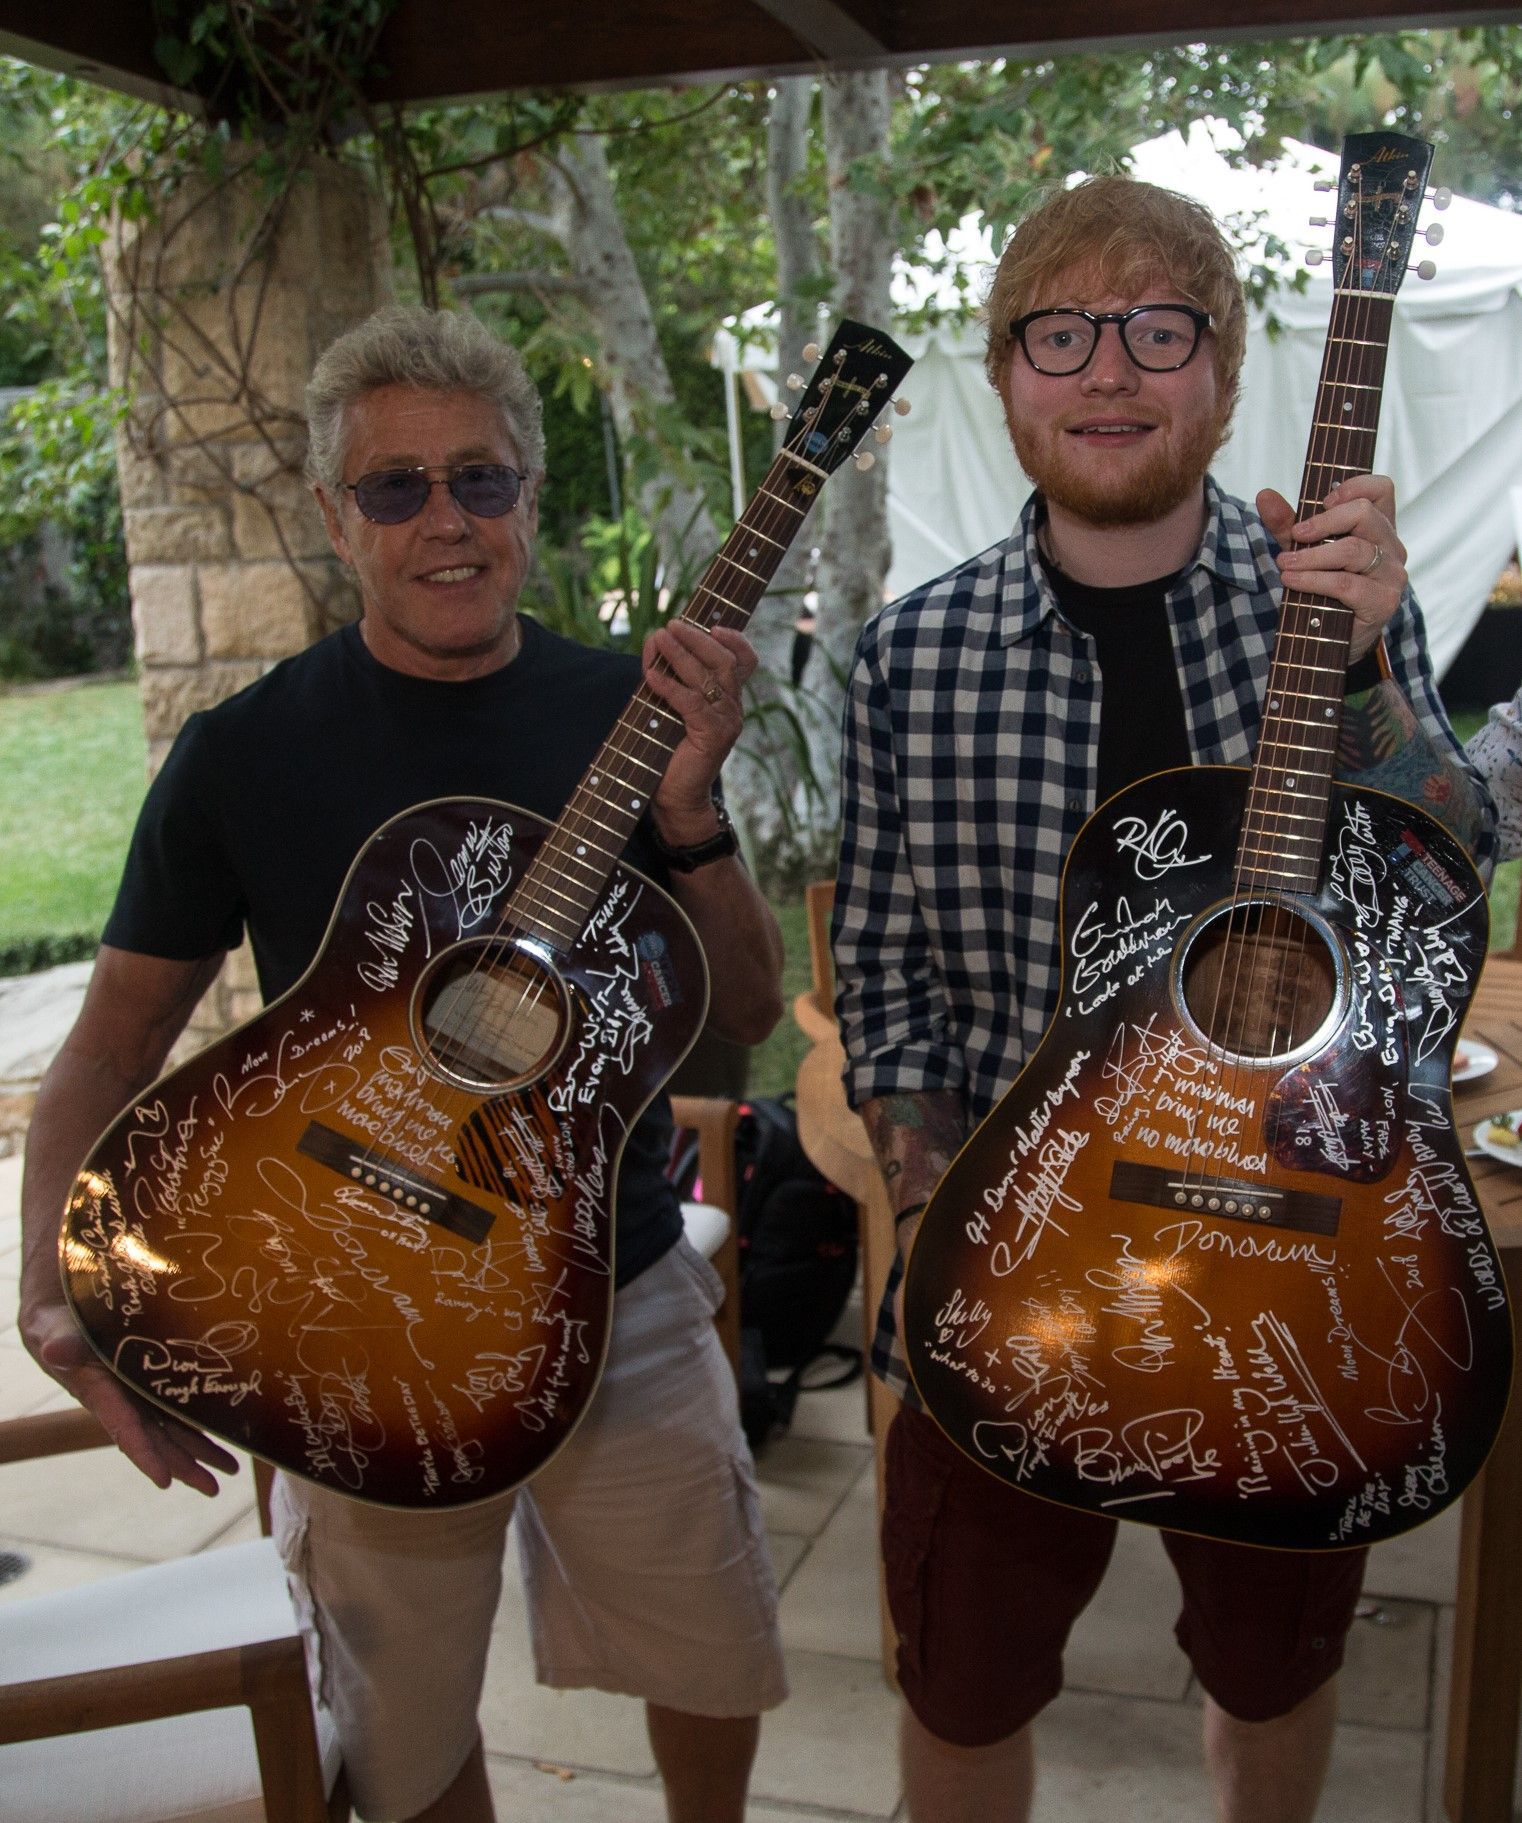 Roger Daltrey and Ed Sheeran holding signed Buddy Holly guitars